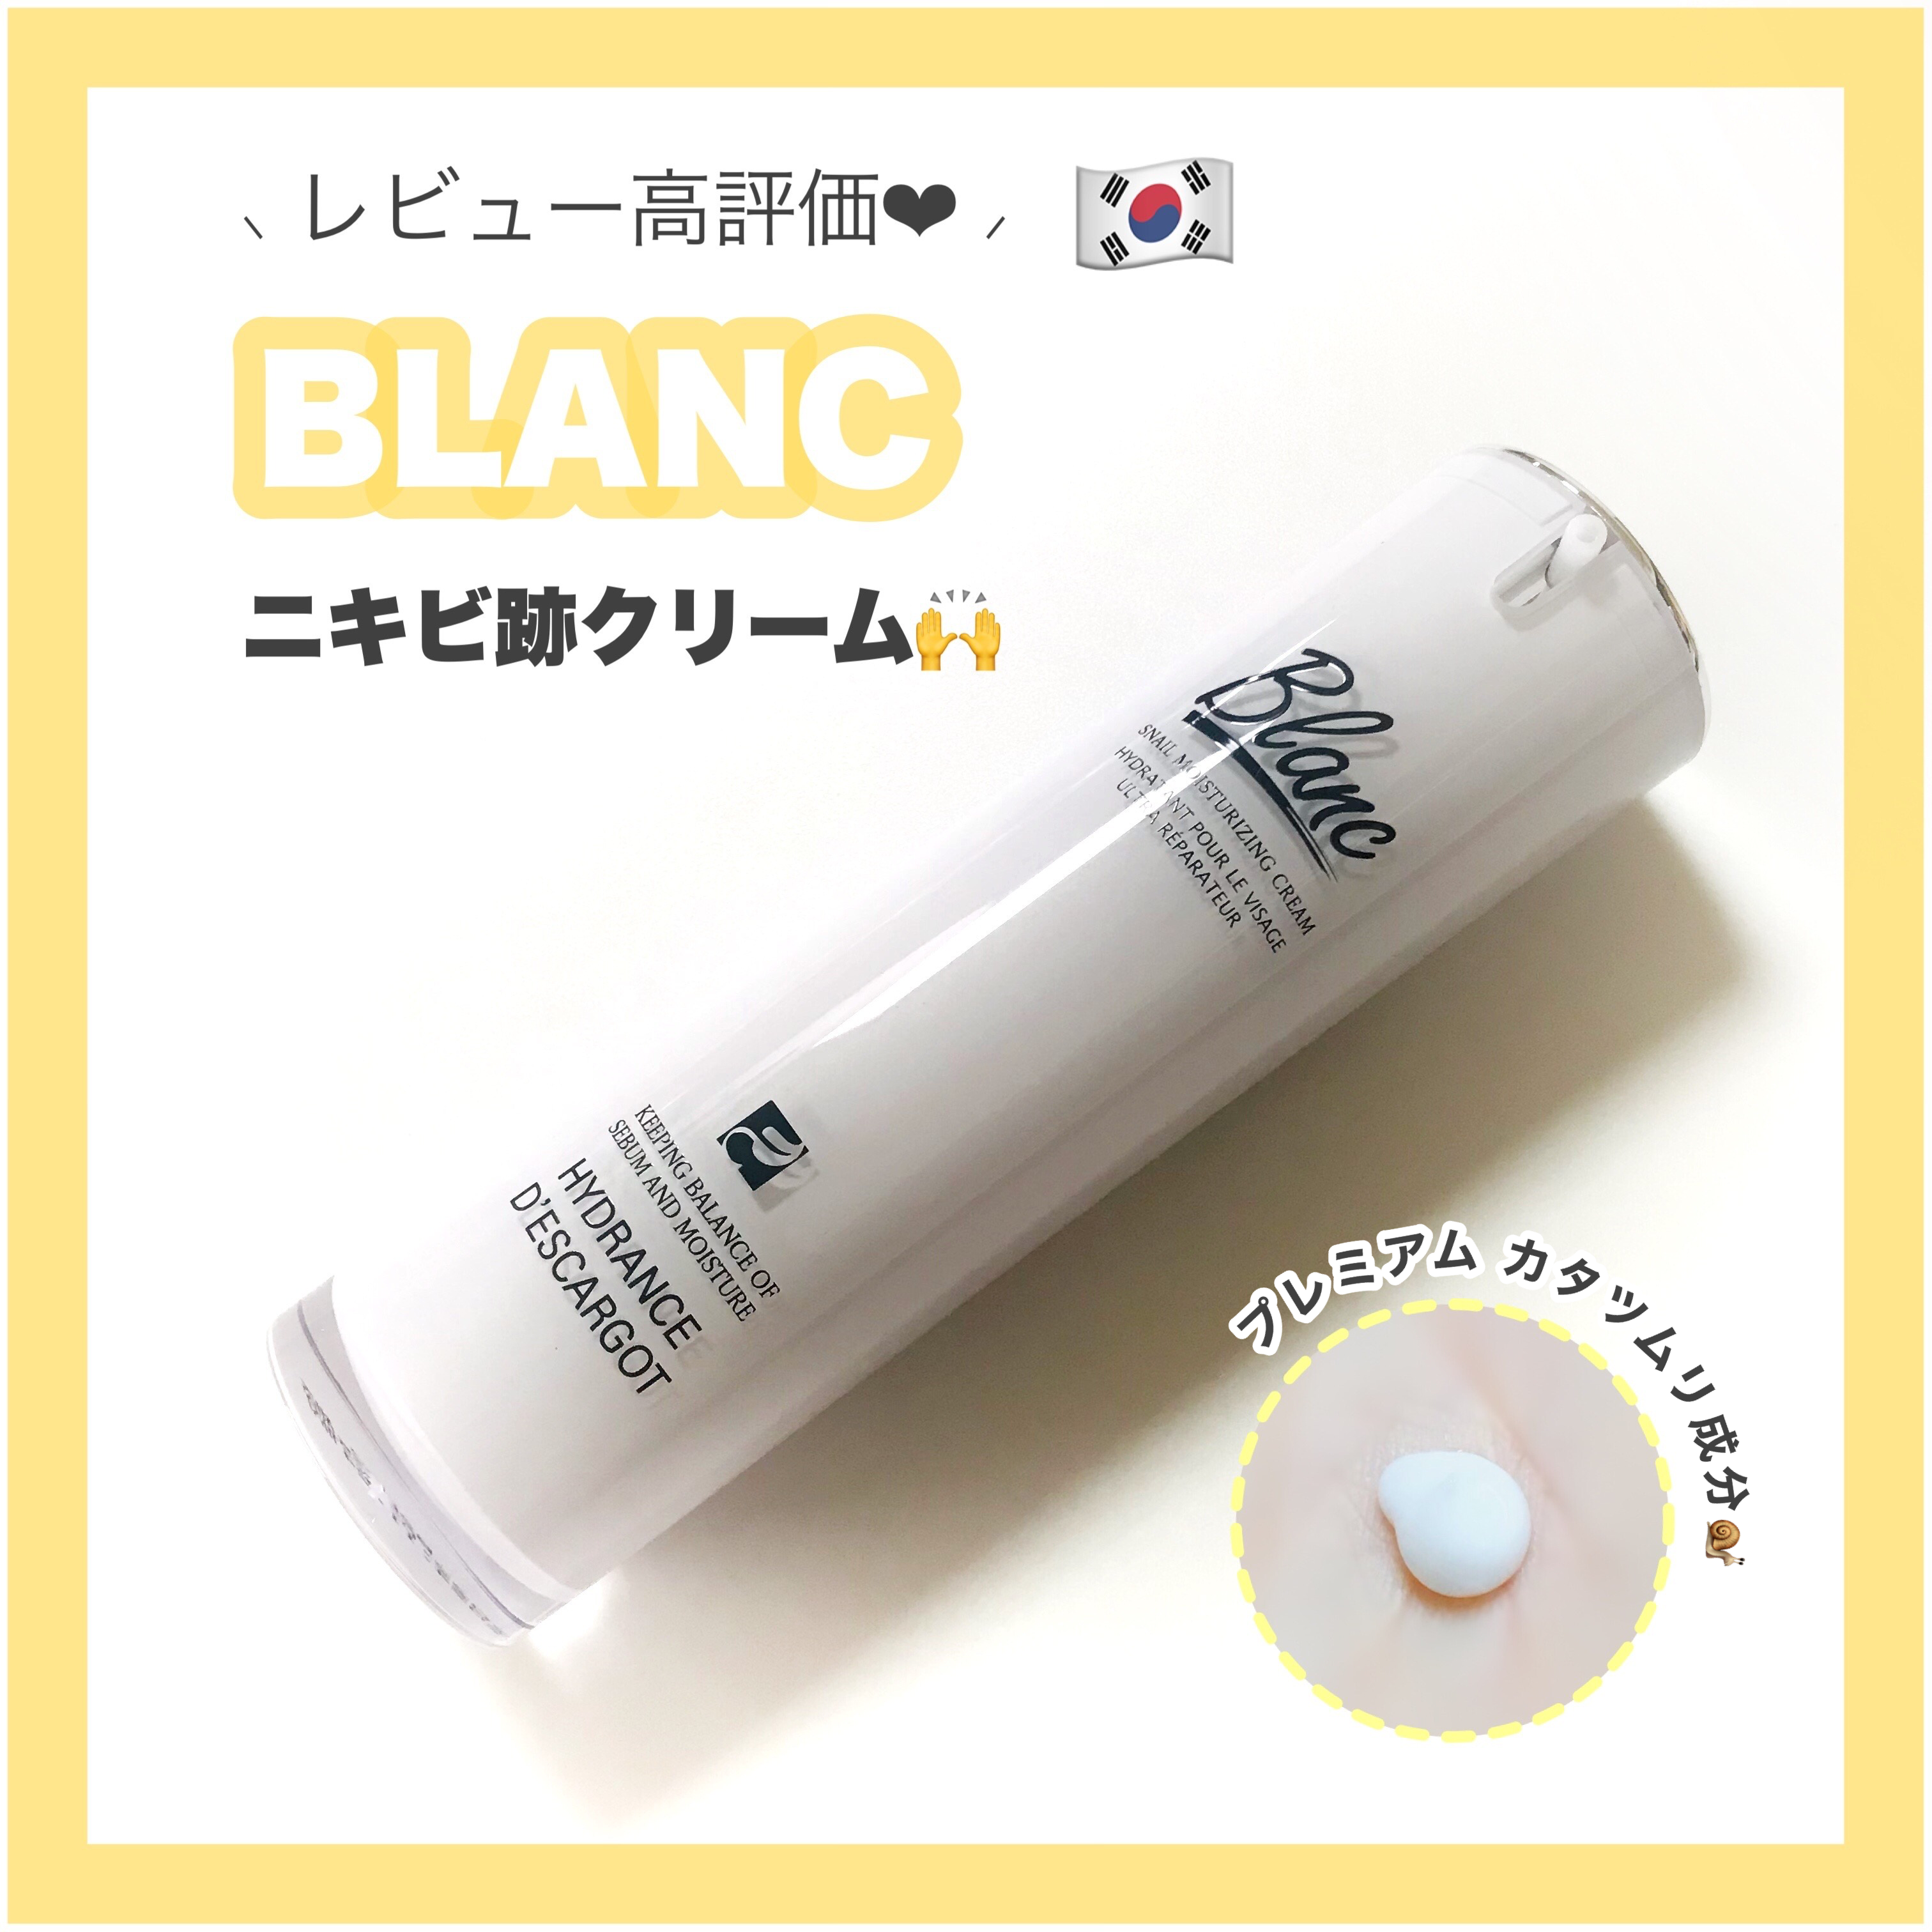 BLANC(ブラン) 高濃縮シカ含有カタツムリクリームの良い点・メリットに関するありすさんの口コミ画像1